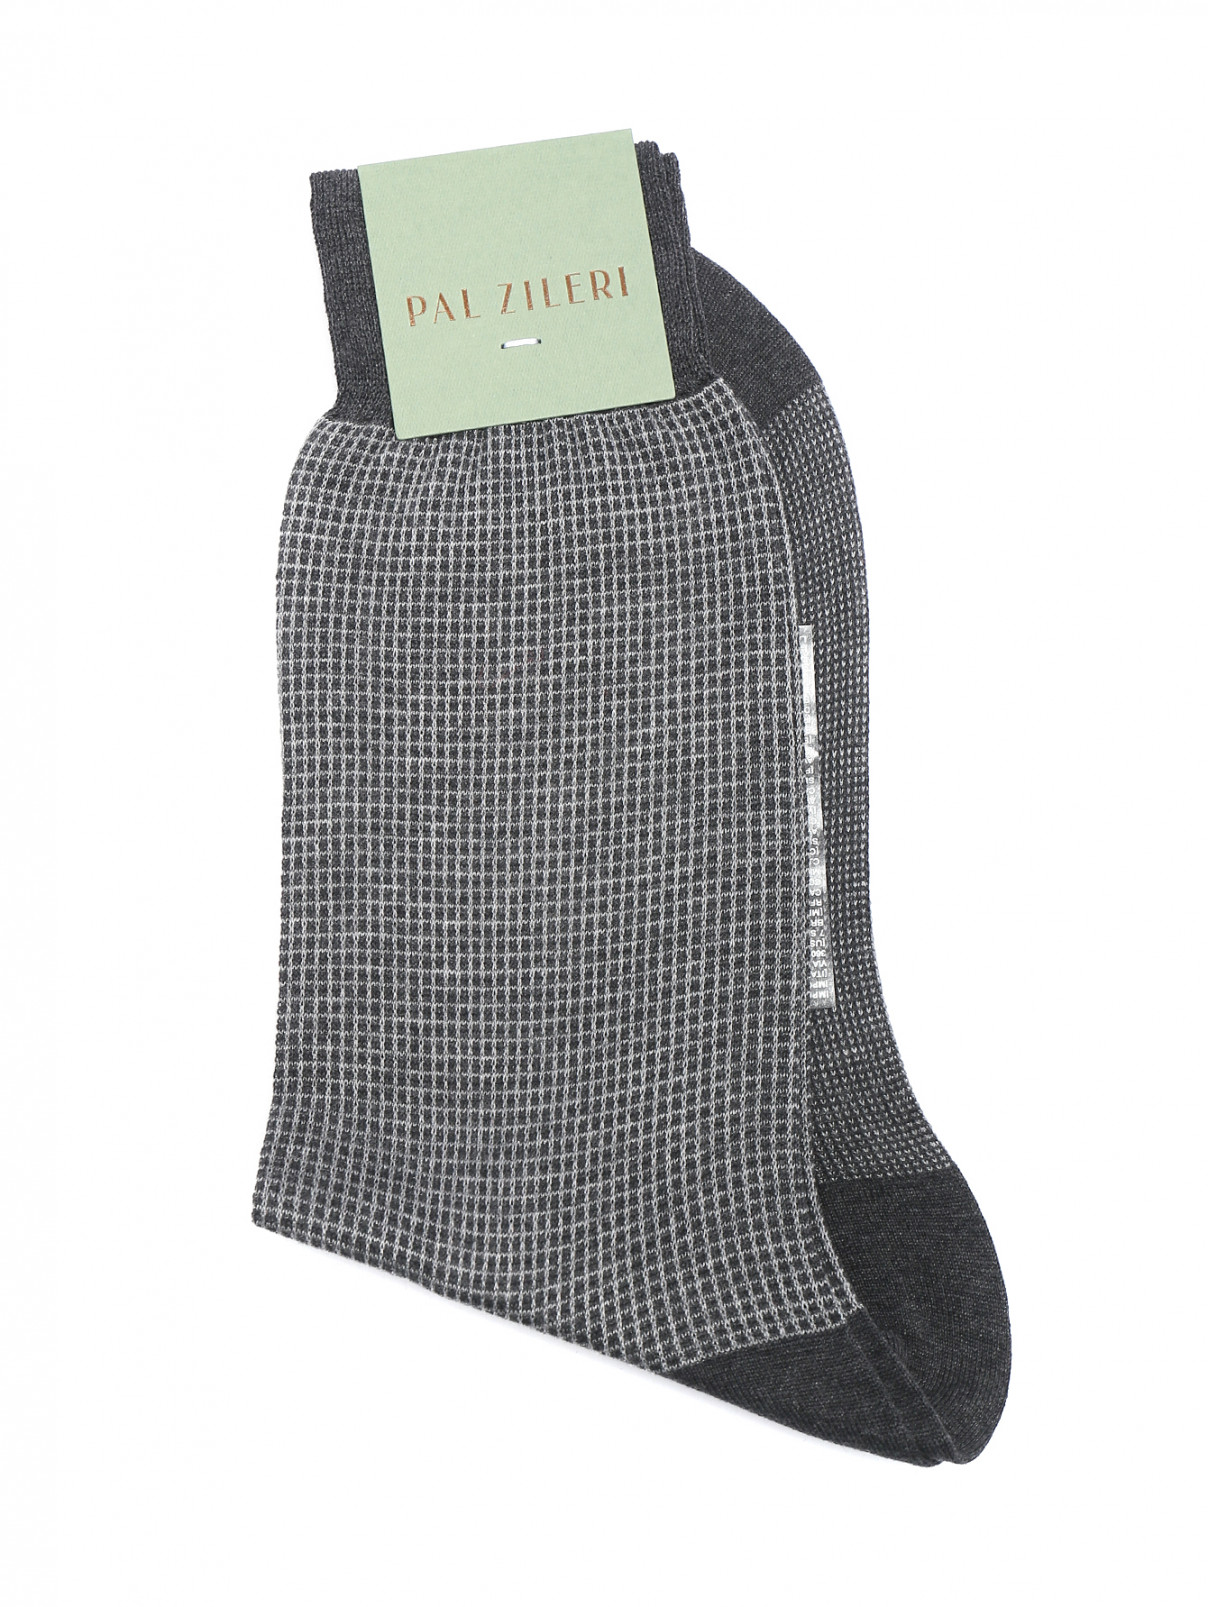 Носки из хлопка с узором Pal Zileri  –  Общий вид  – Цвет:  Серый